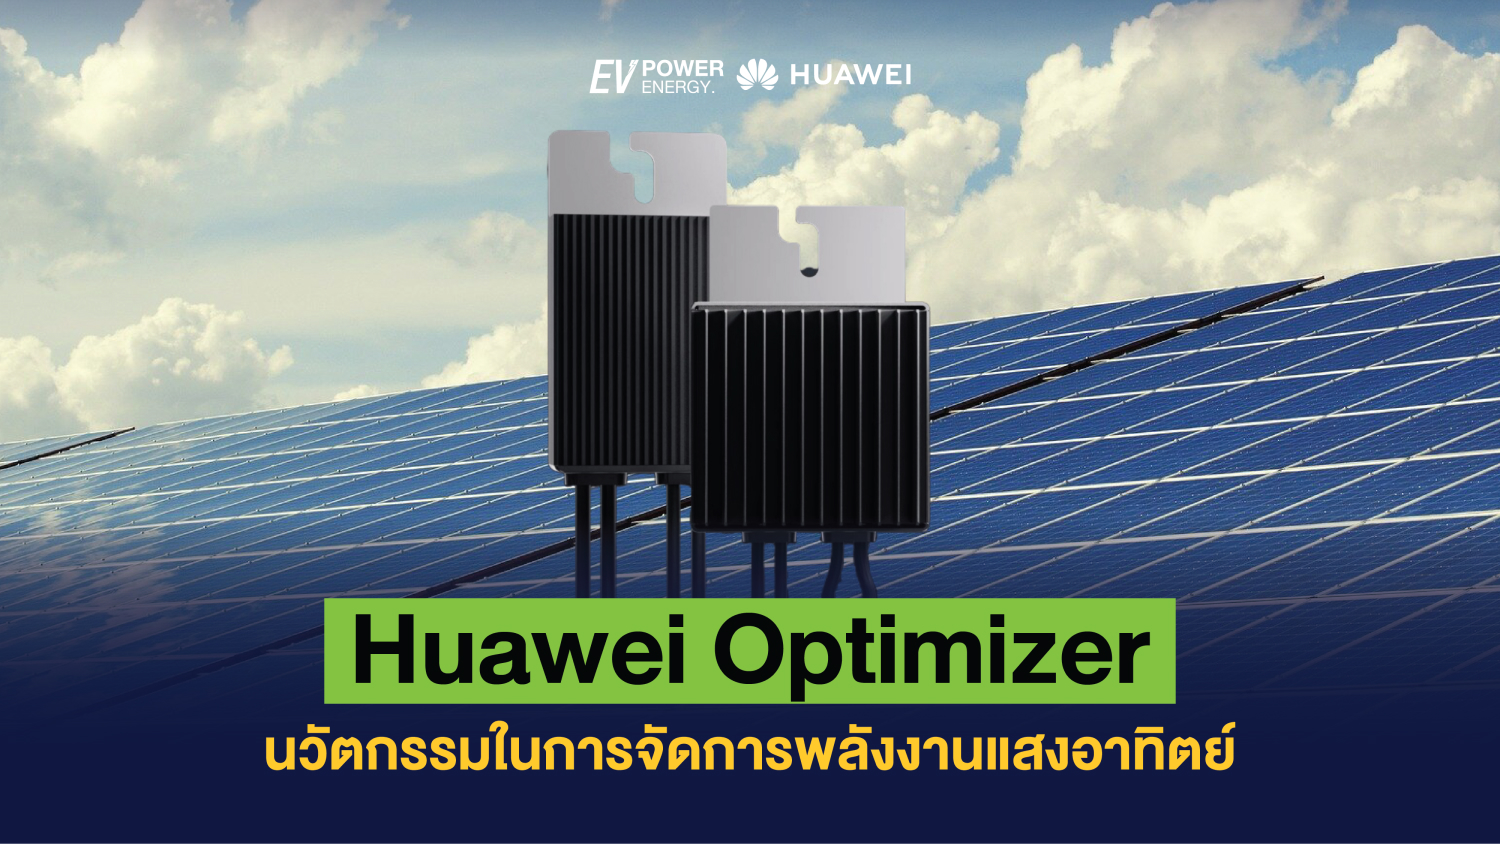 Huawei Optimizer นวัตกรรมในการจัดการพลังงานแสงอาทิตย์ 1